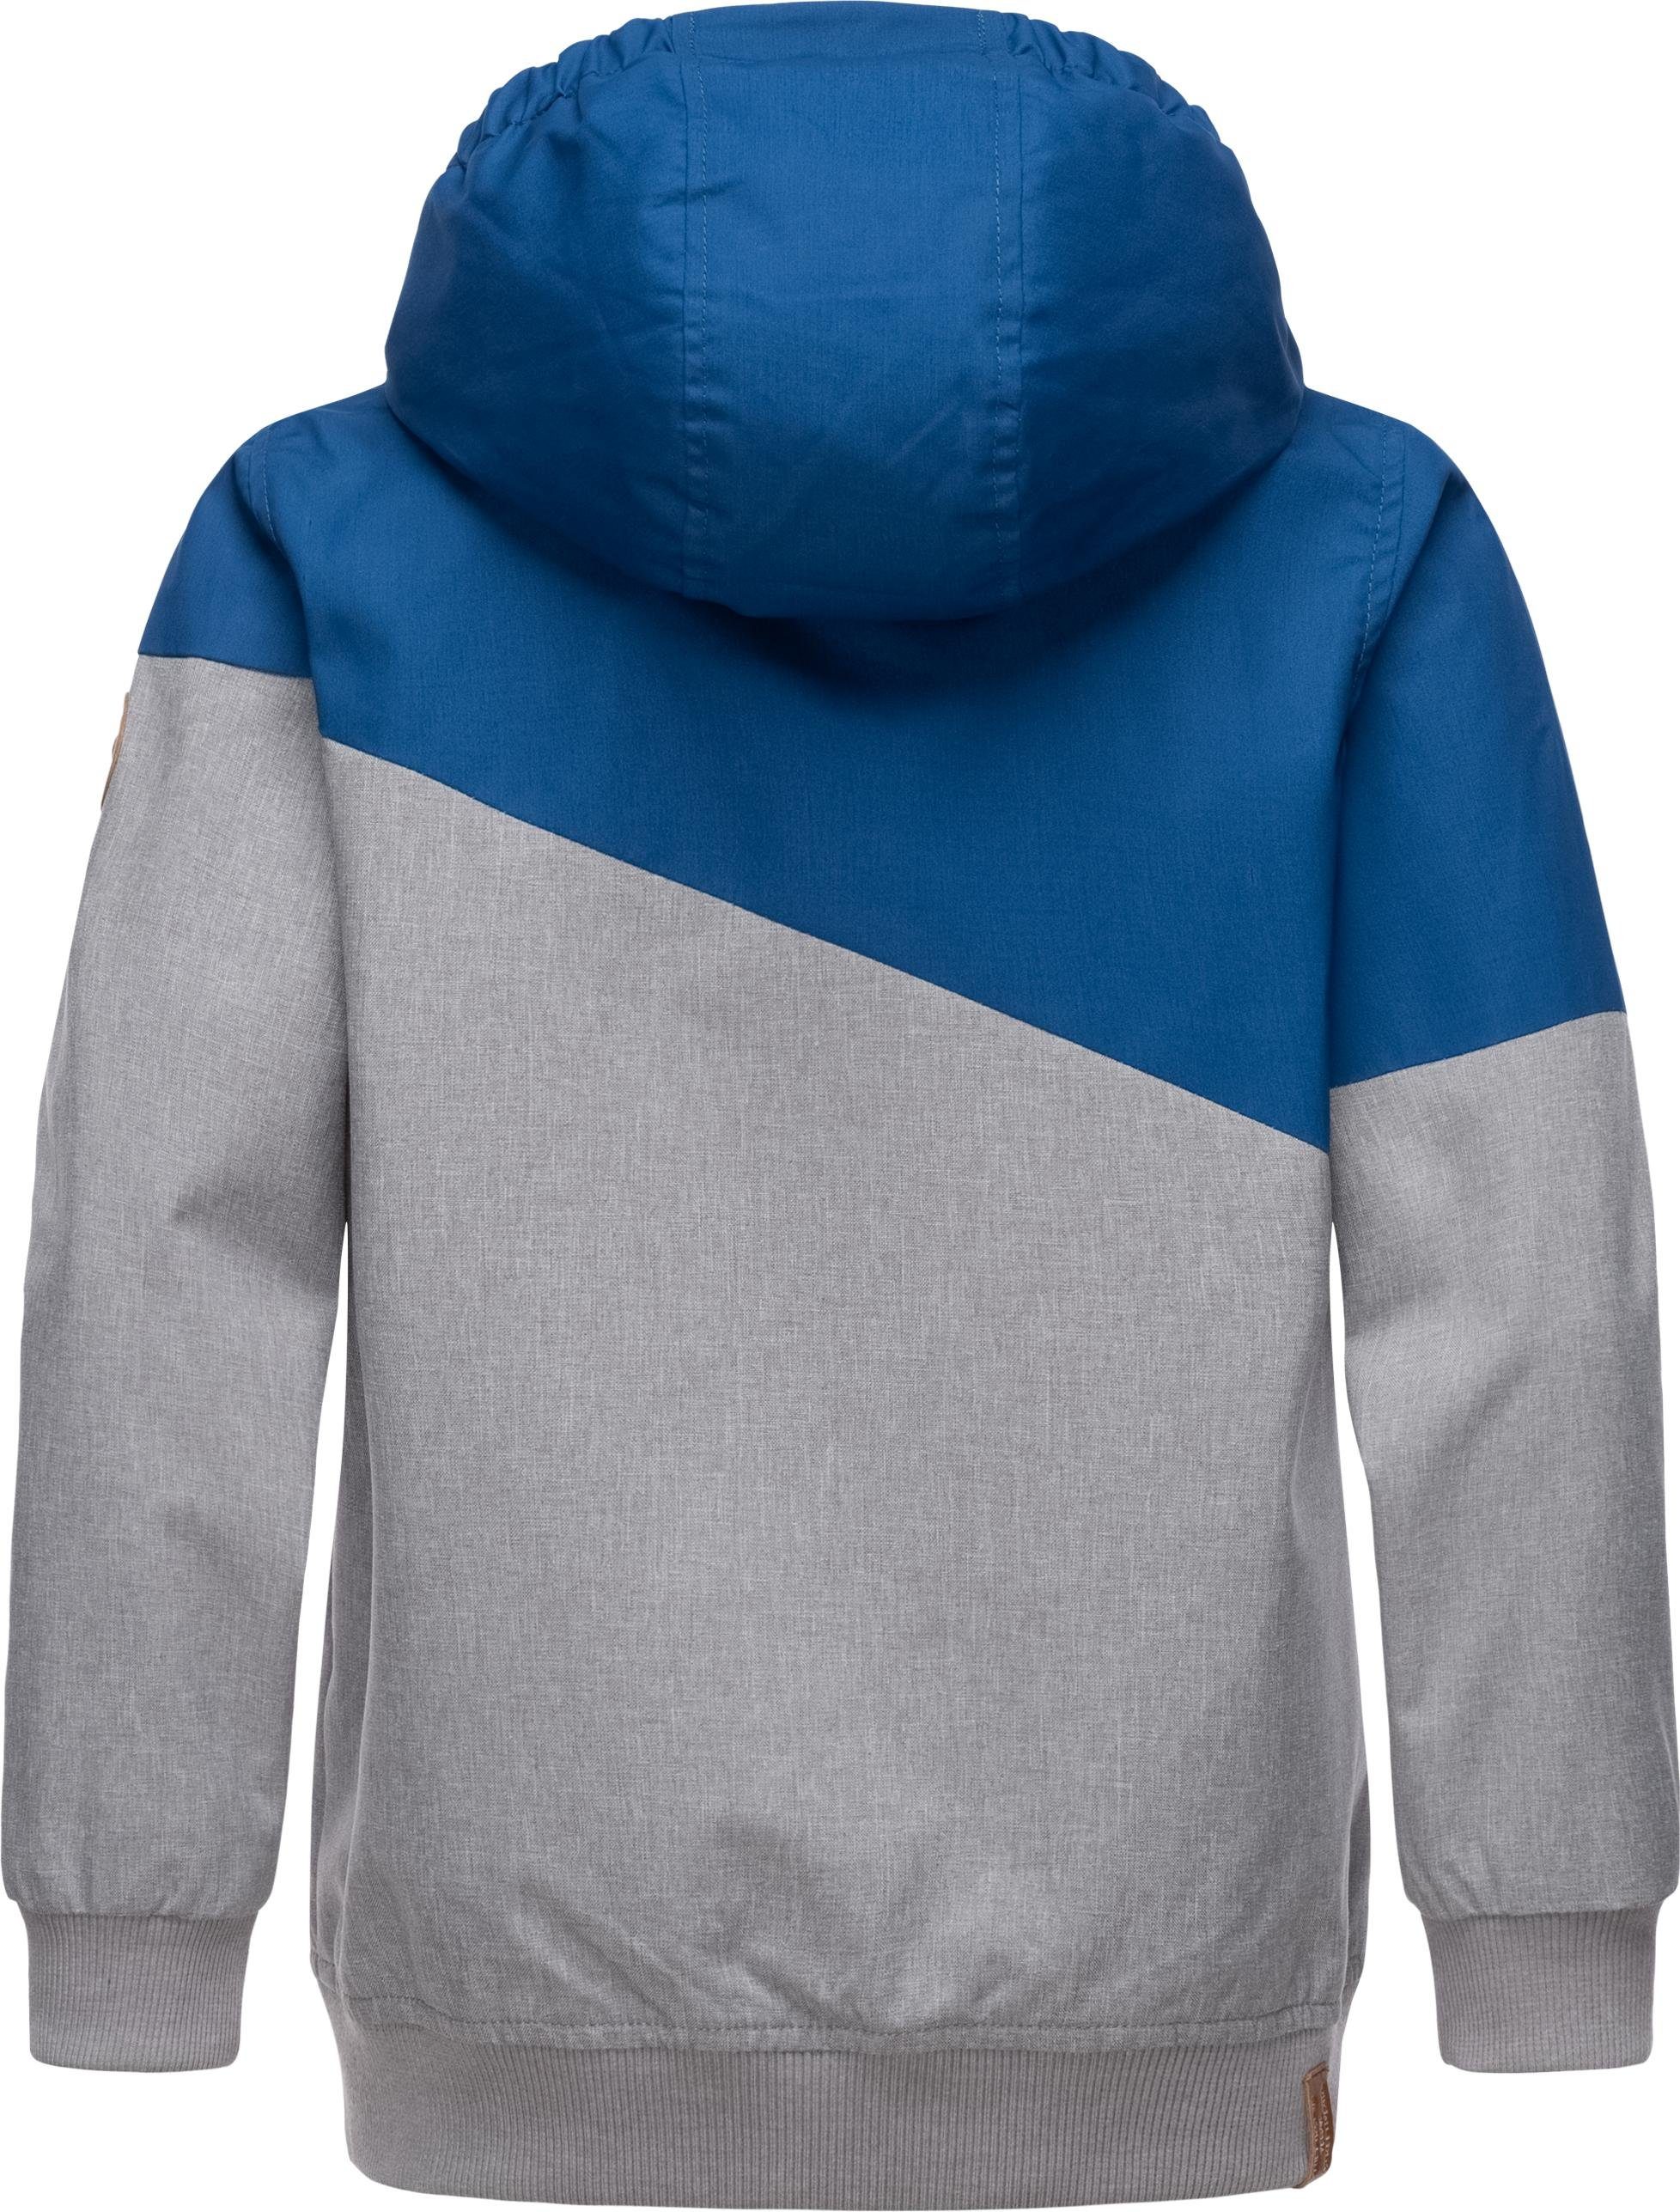 II Jowell Outdoorjacke Jungen Kapuze blau sportliche mit Ragwear Jacke